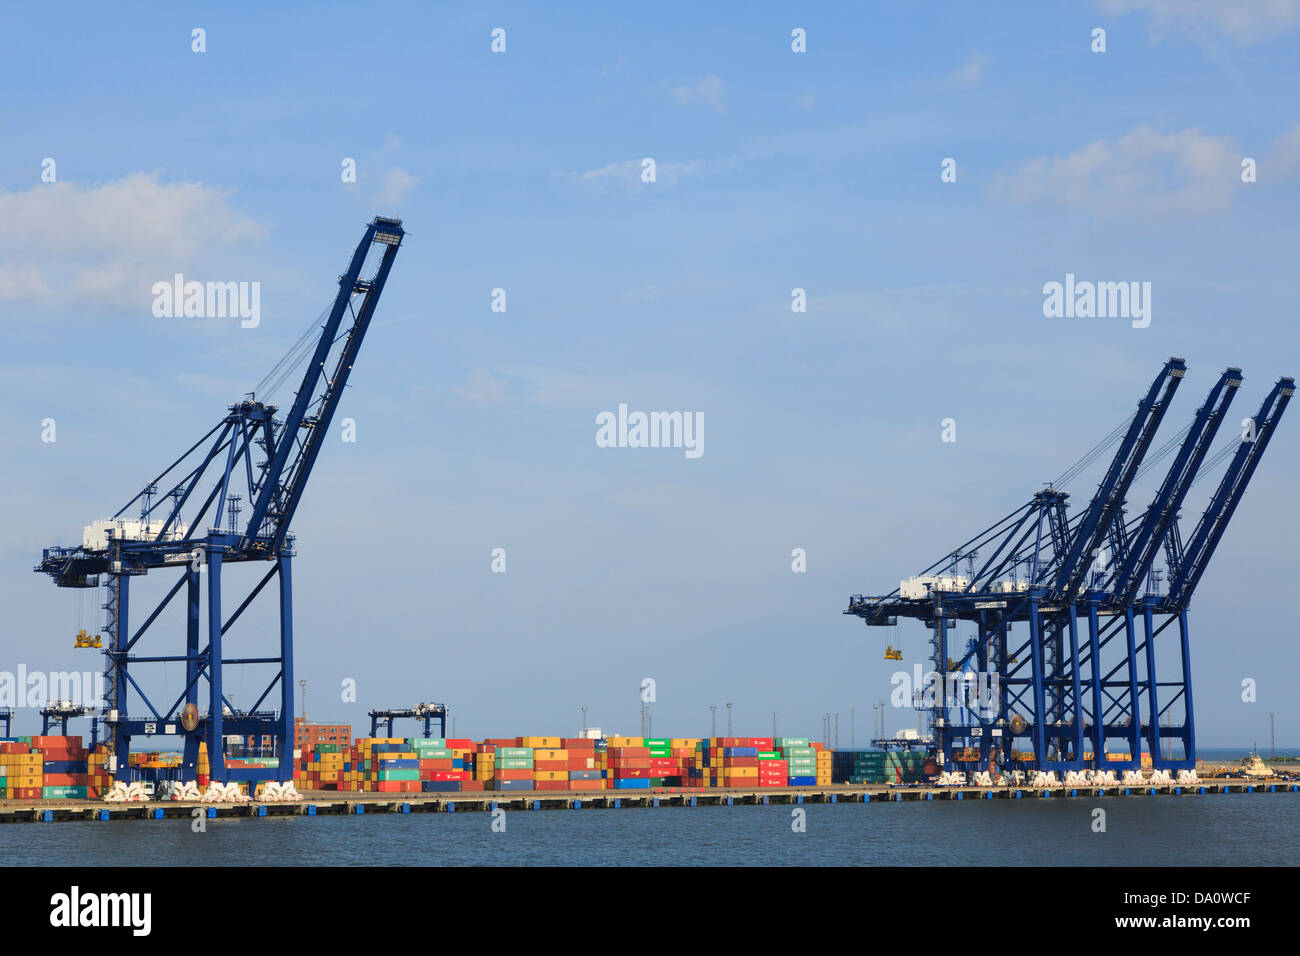 Gantry Kran zum heben von Containern auf dockside Terminal der größten Containerhafen in Großbritannien. Hafen von Felixstowe Suffolk England Großbritannien Großbritannien Stockfoto